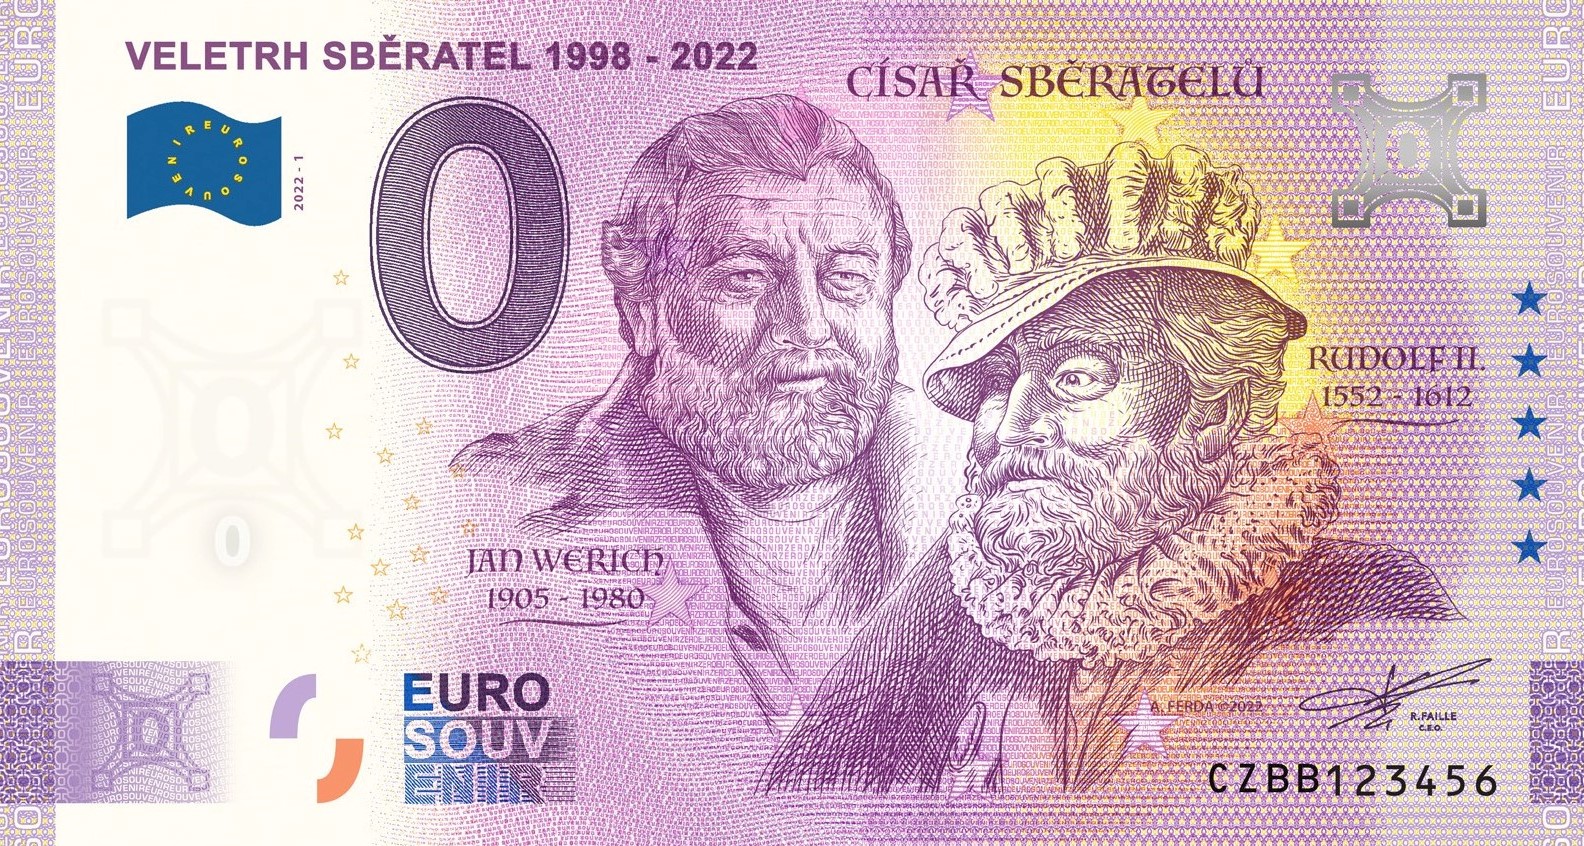 0 Euro Souvenir – VELETRH SBĚRATEL 1998 - 2022